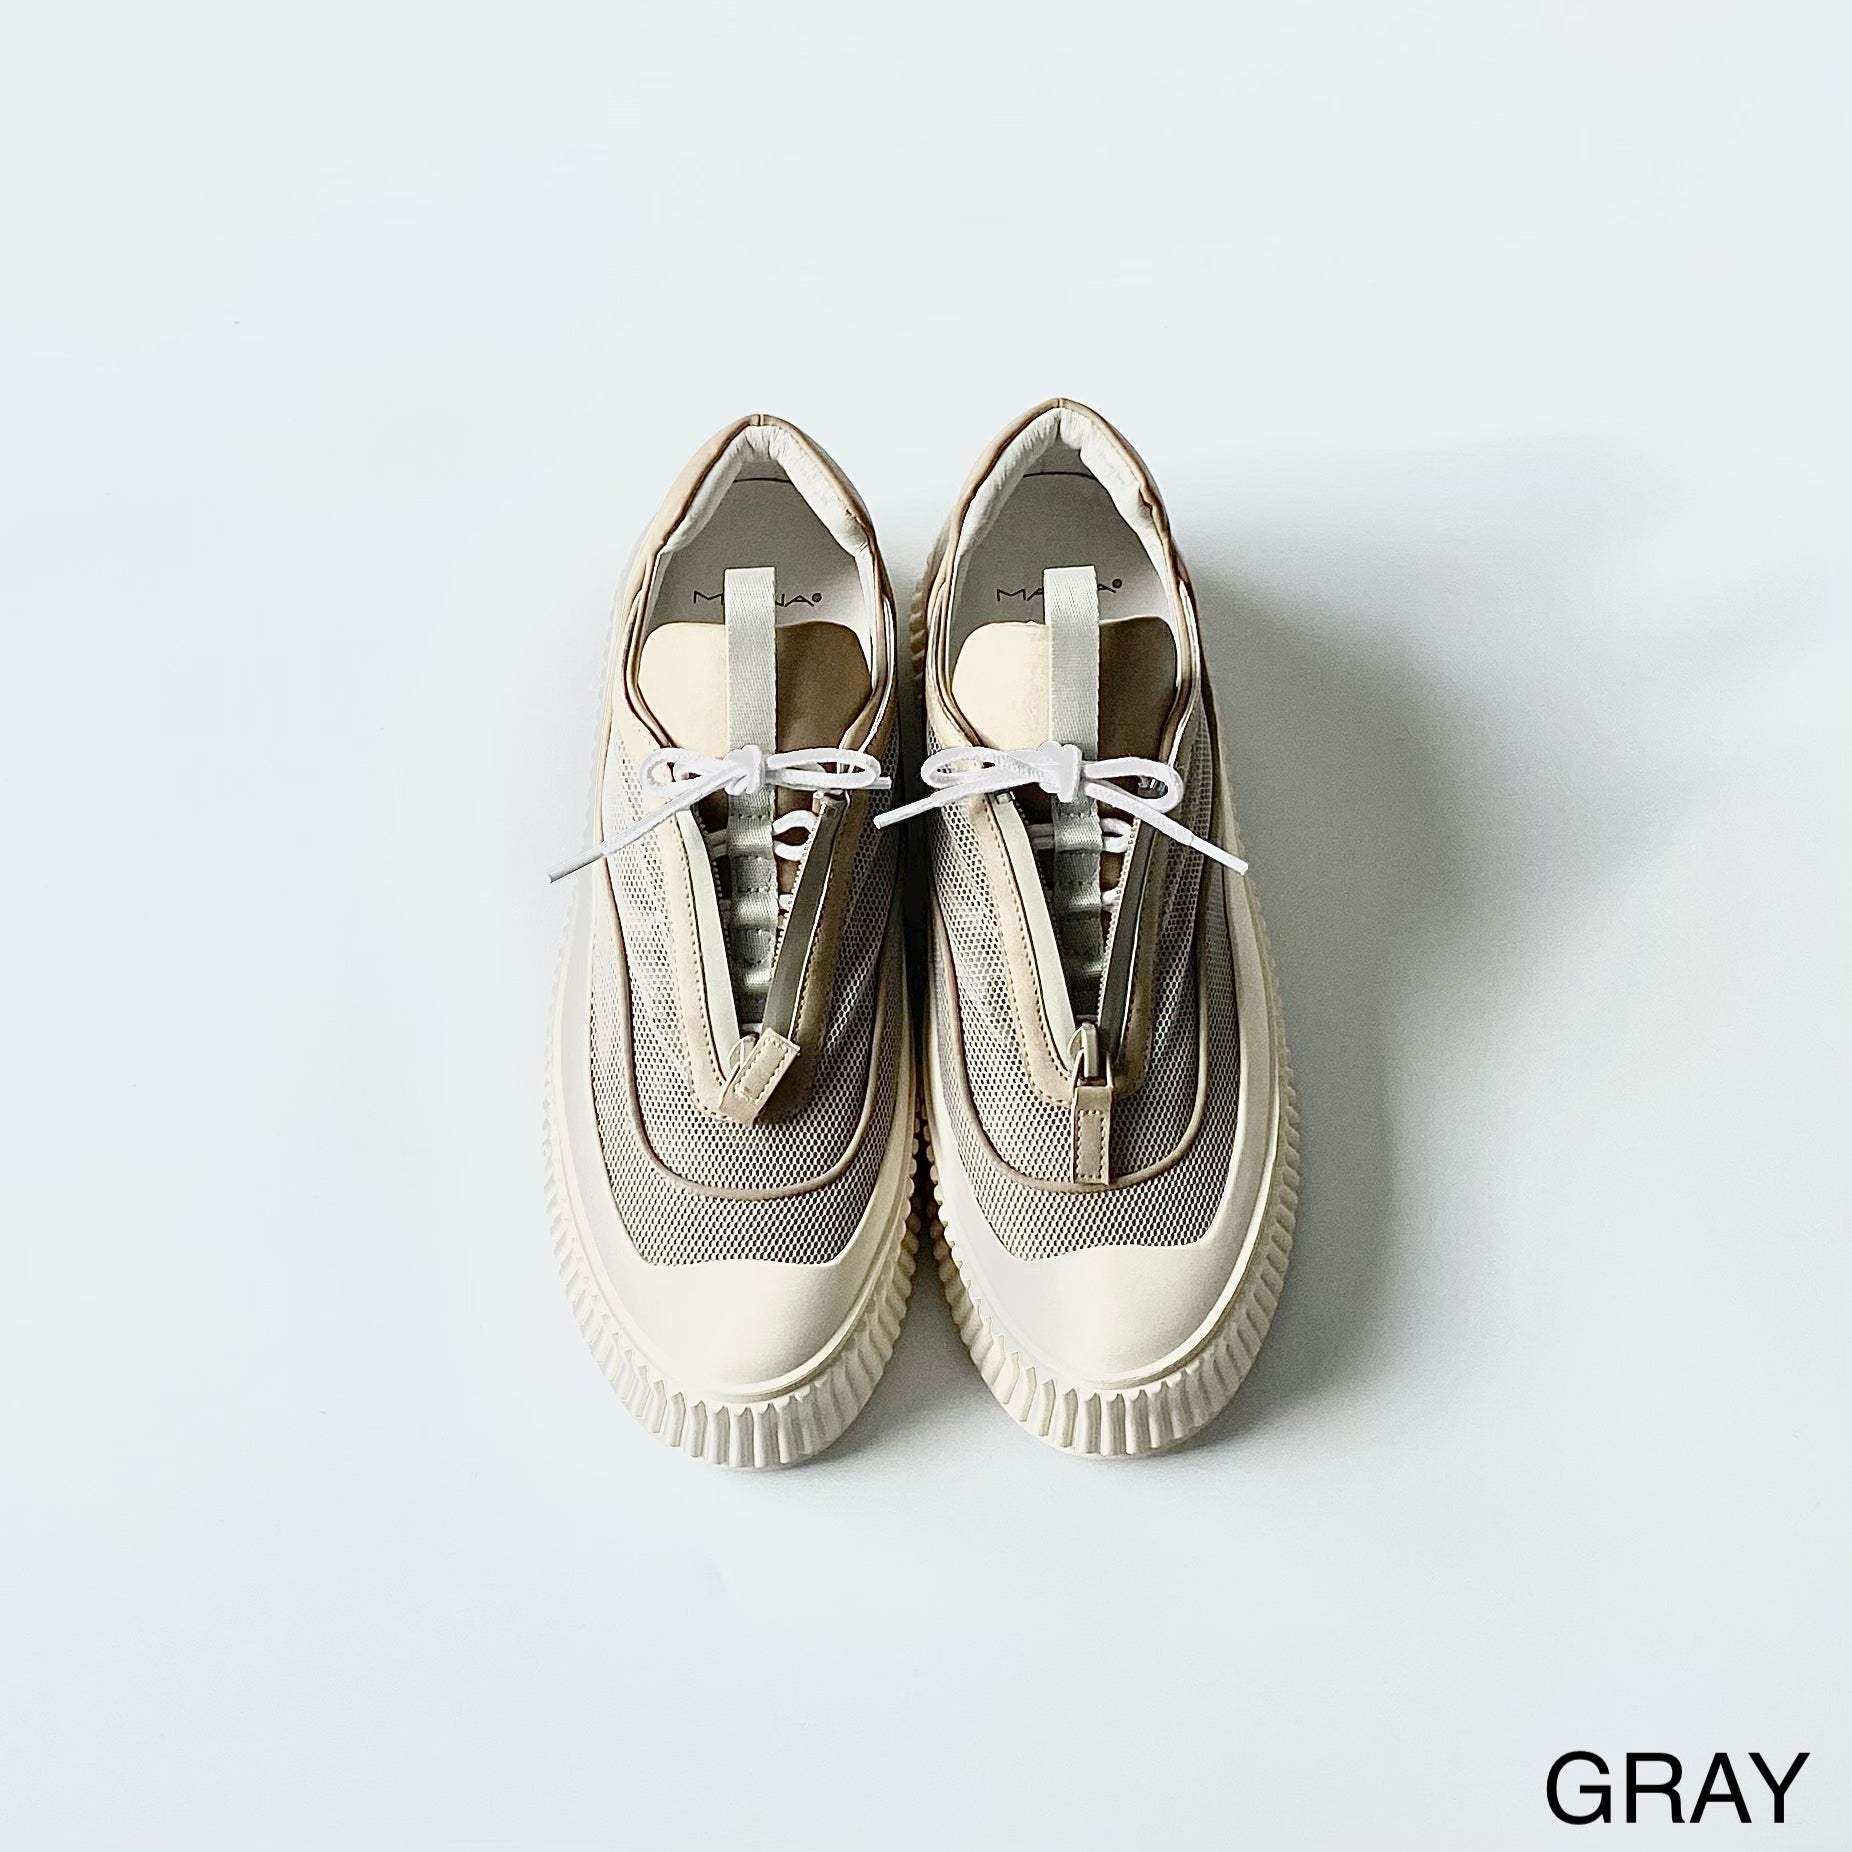 GRAY / 35 (22.5cm)